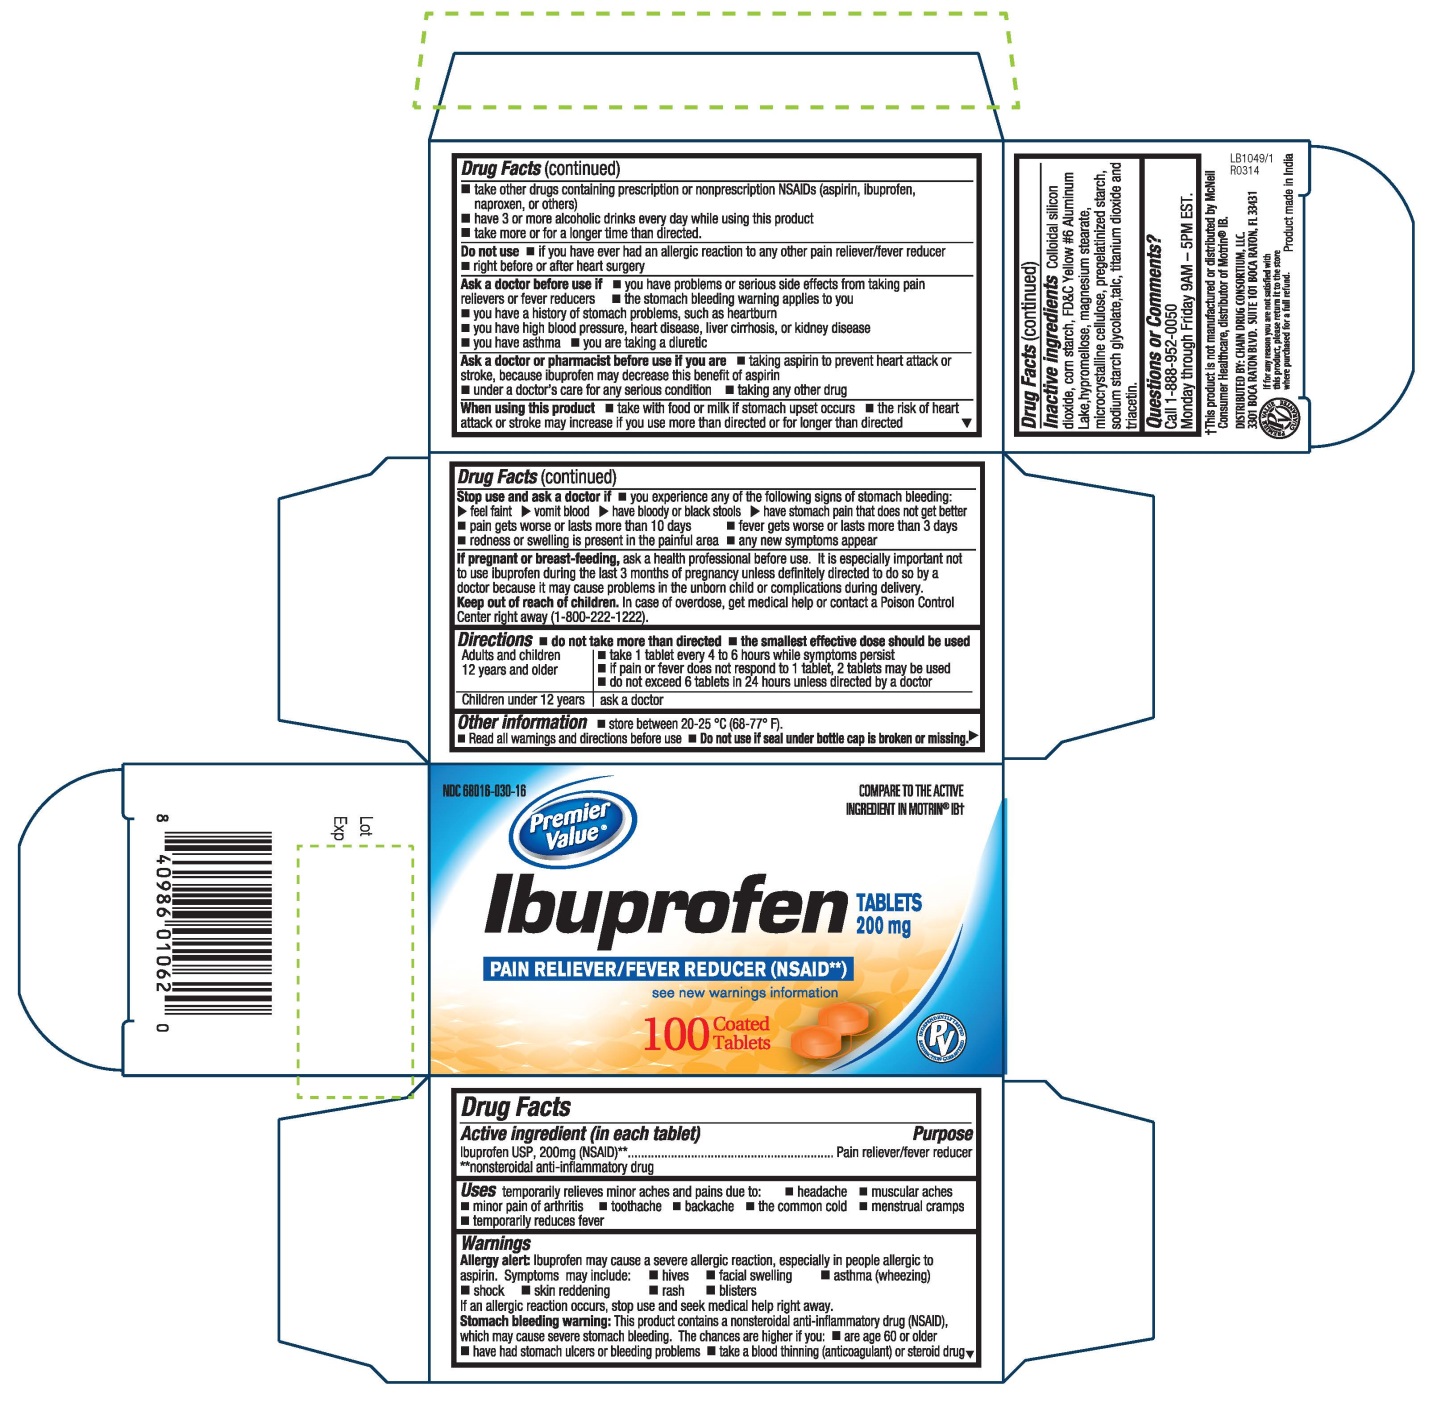 Z:\SPL-OTC Mono\PV\Ibuprofen  tablet Orange\LB1049.jpg